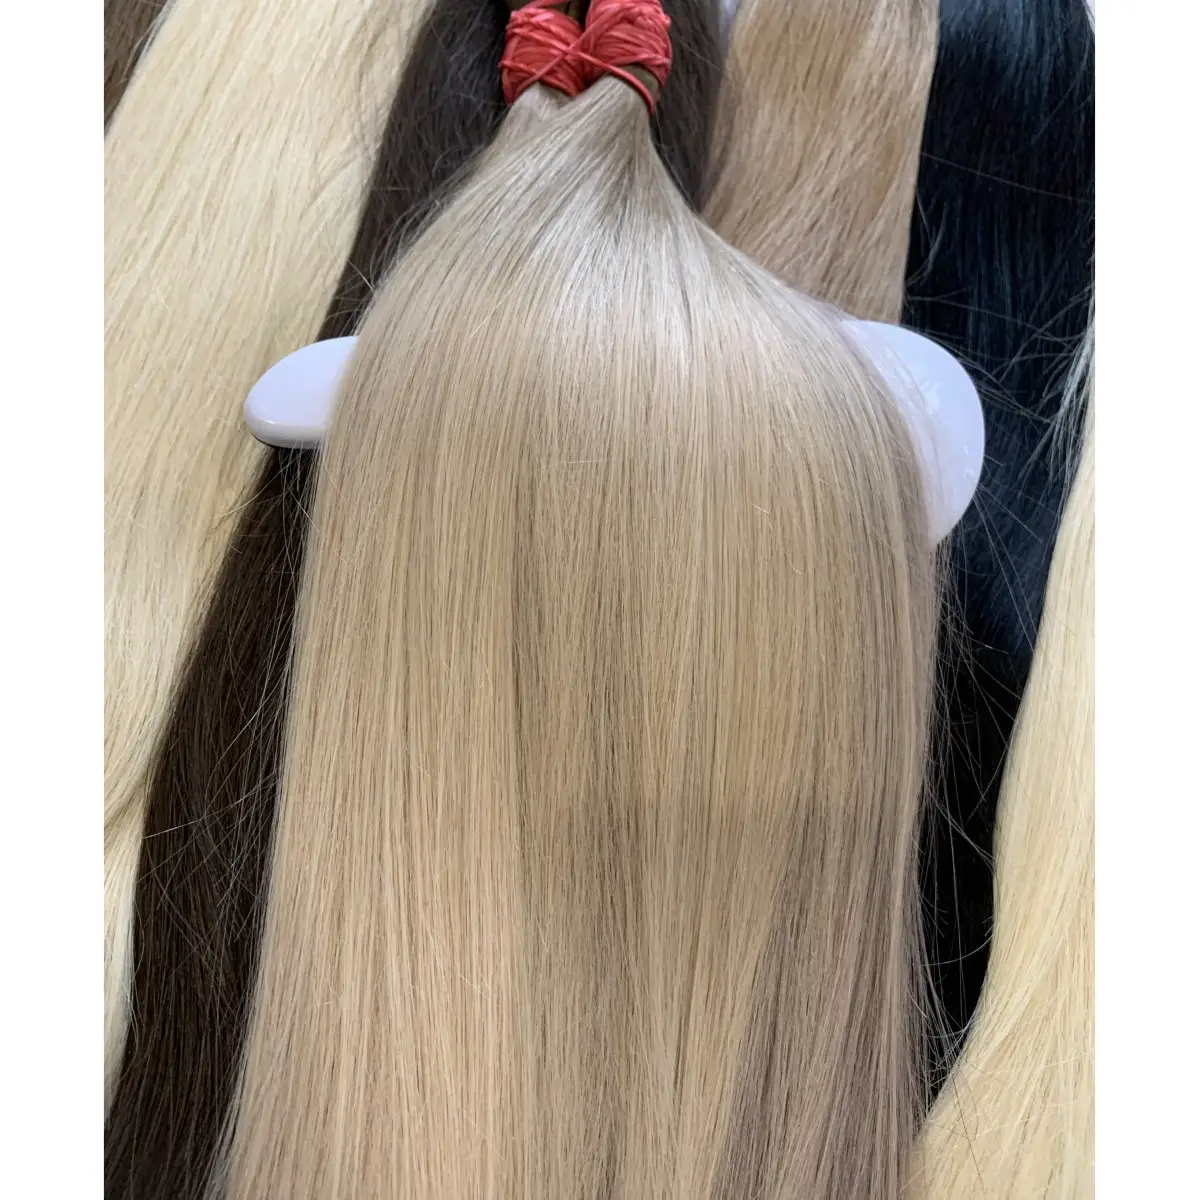 Ascandiv.blend çin Remy saç 60cm uzun doğal saç toplu 57 farklı renkler ile stokta satışa